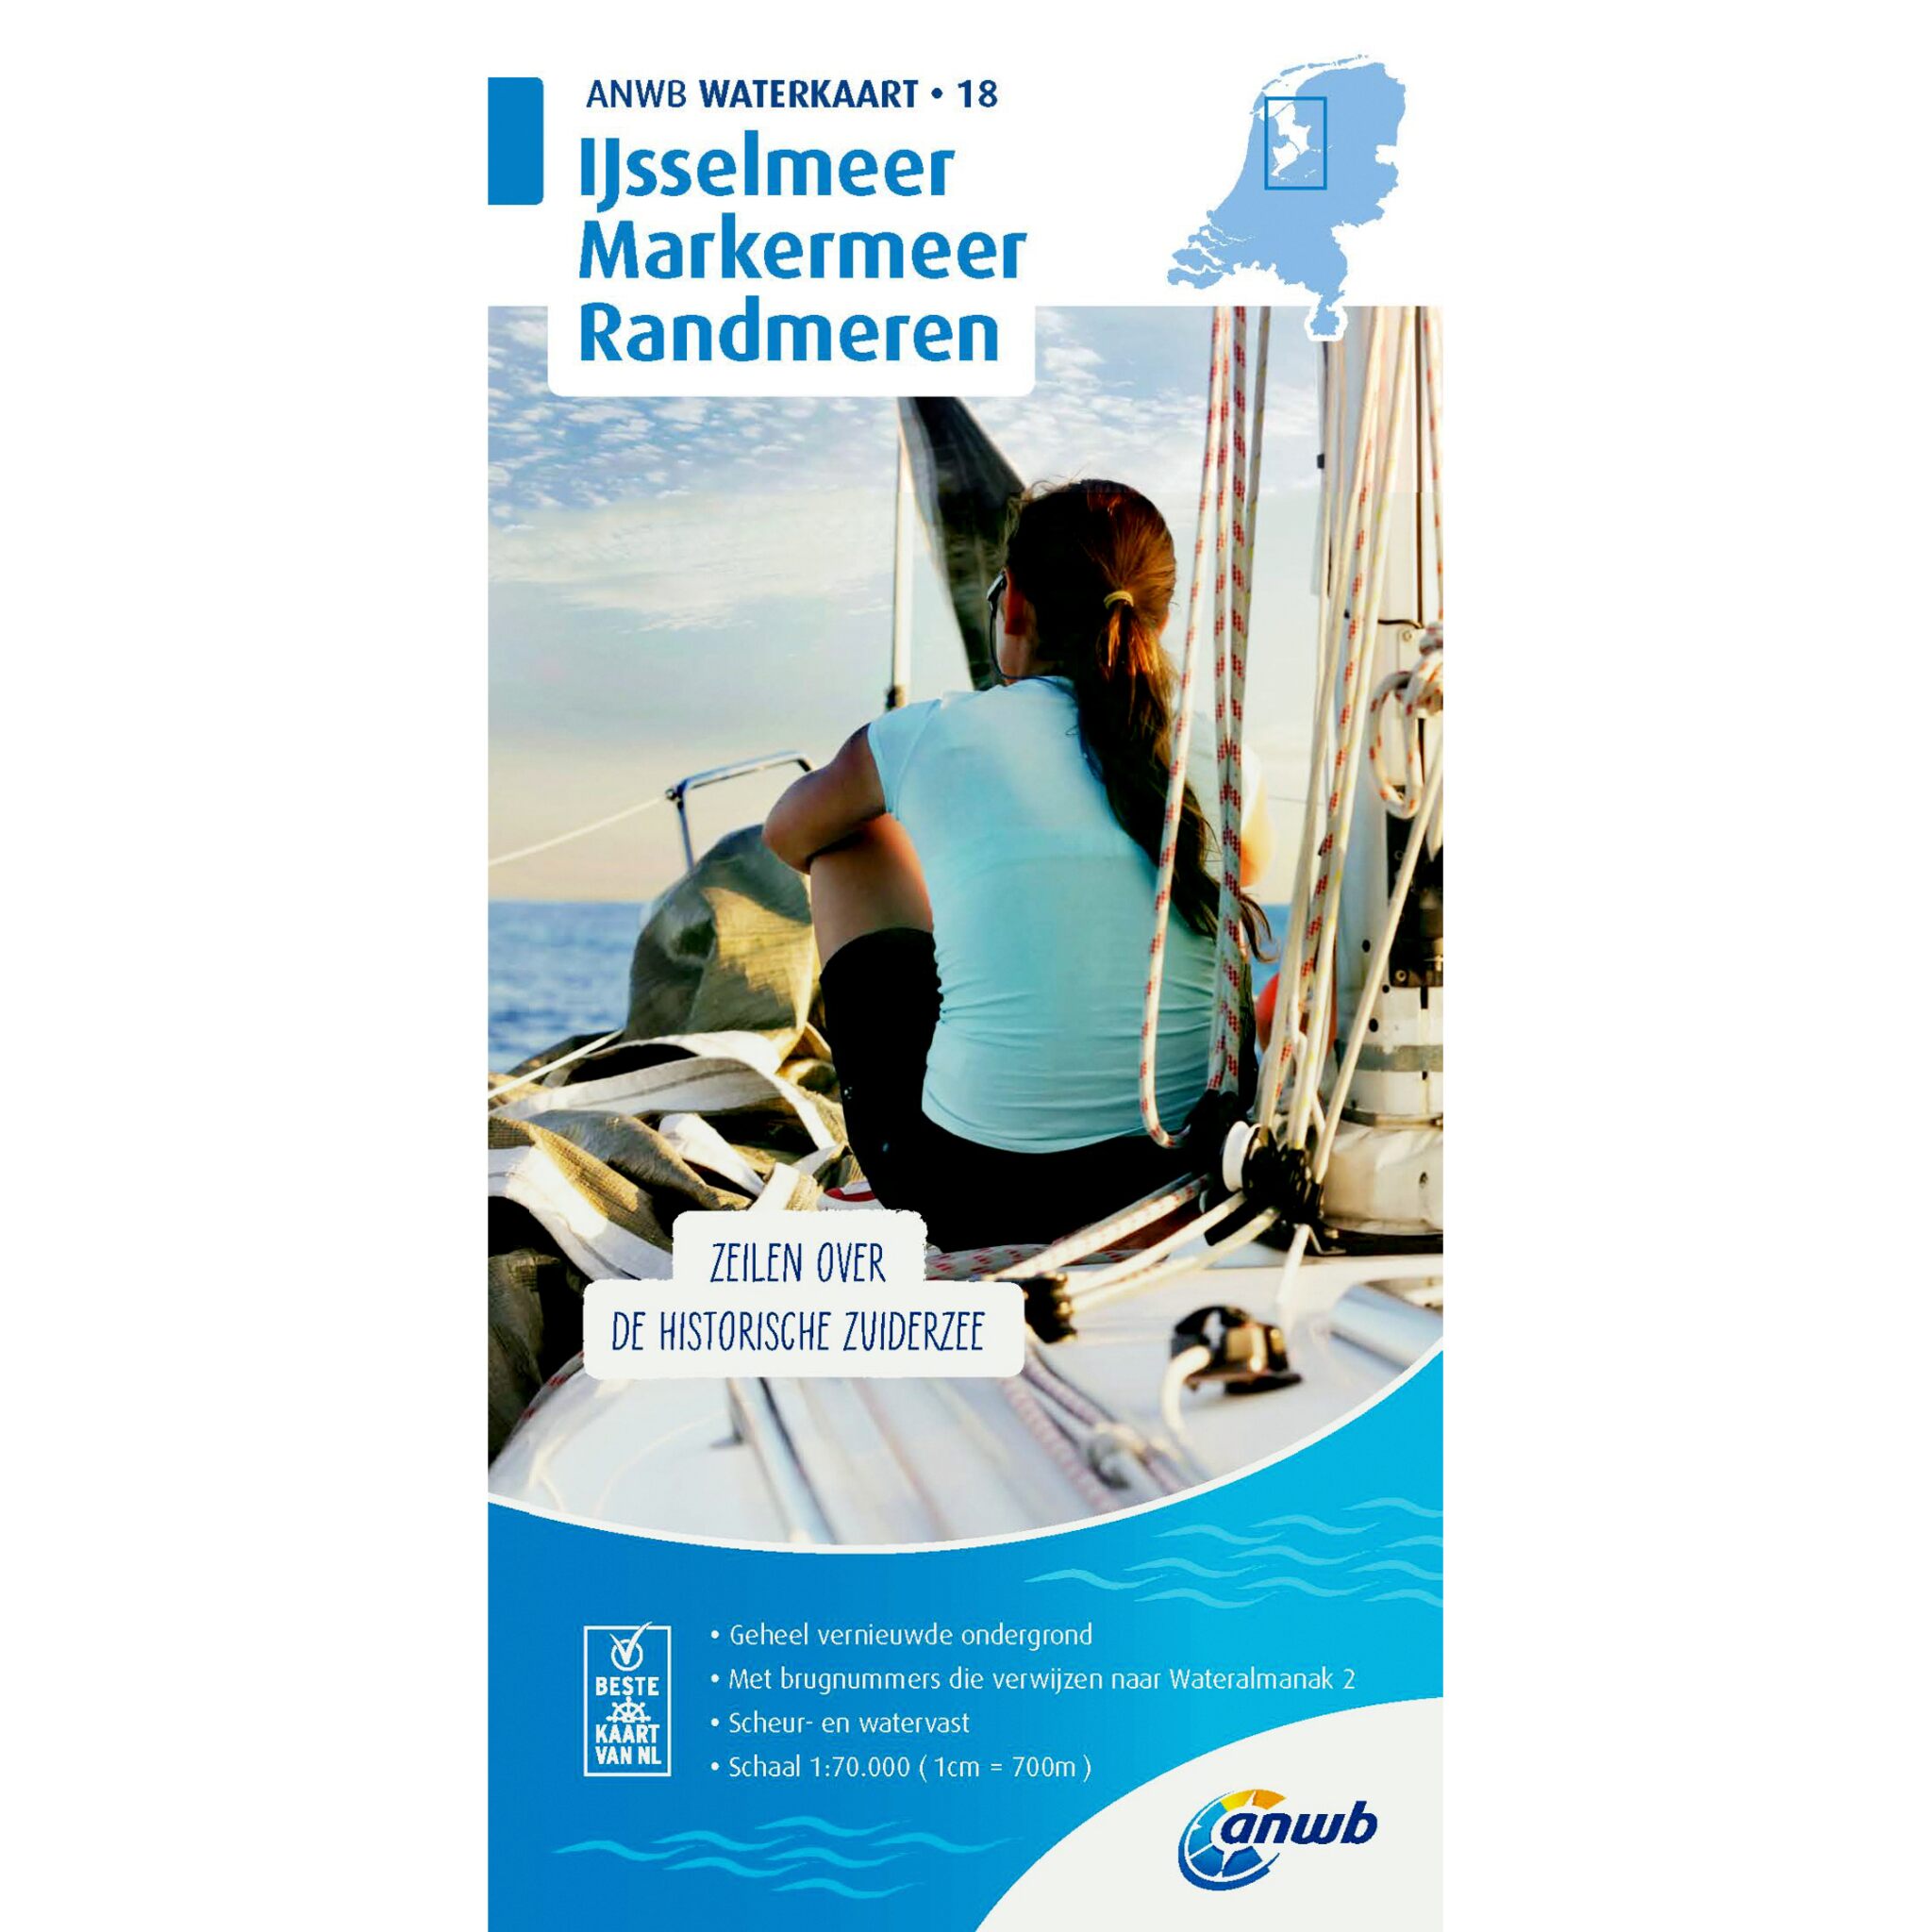 Waterkaart 18 Ijsselmeer Markermeer/Randmeren 2019